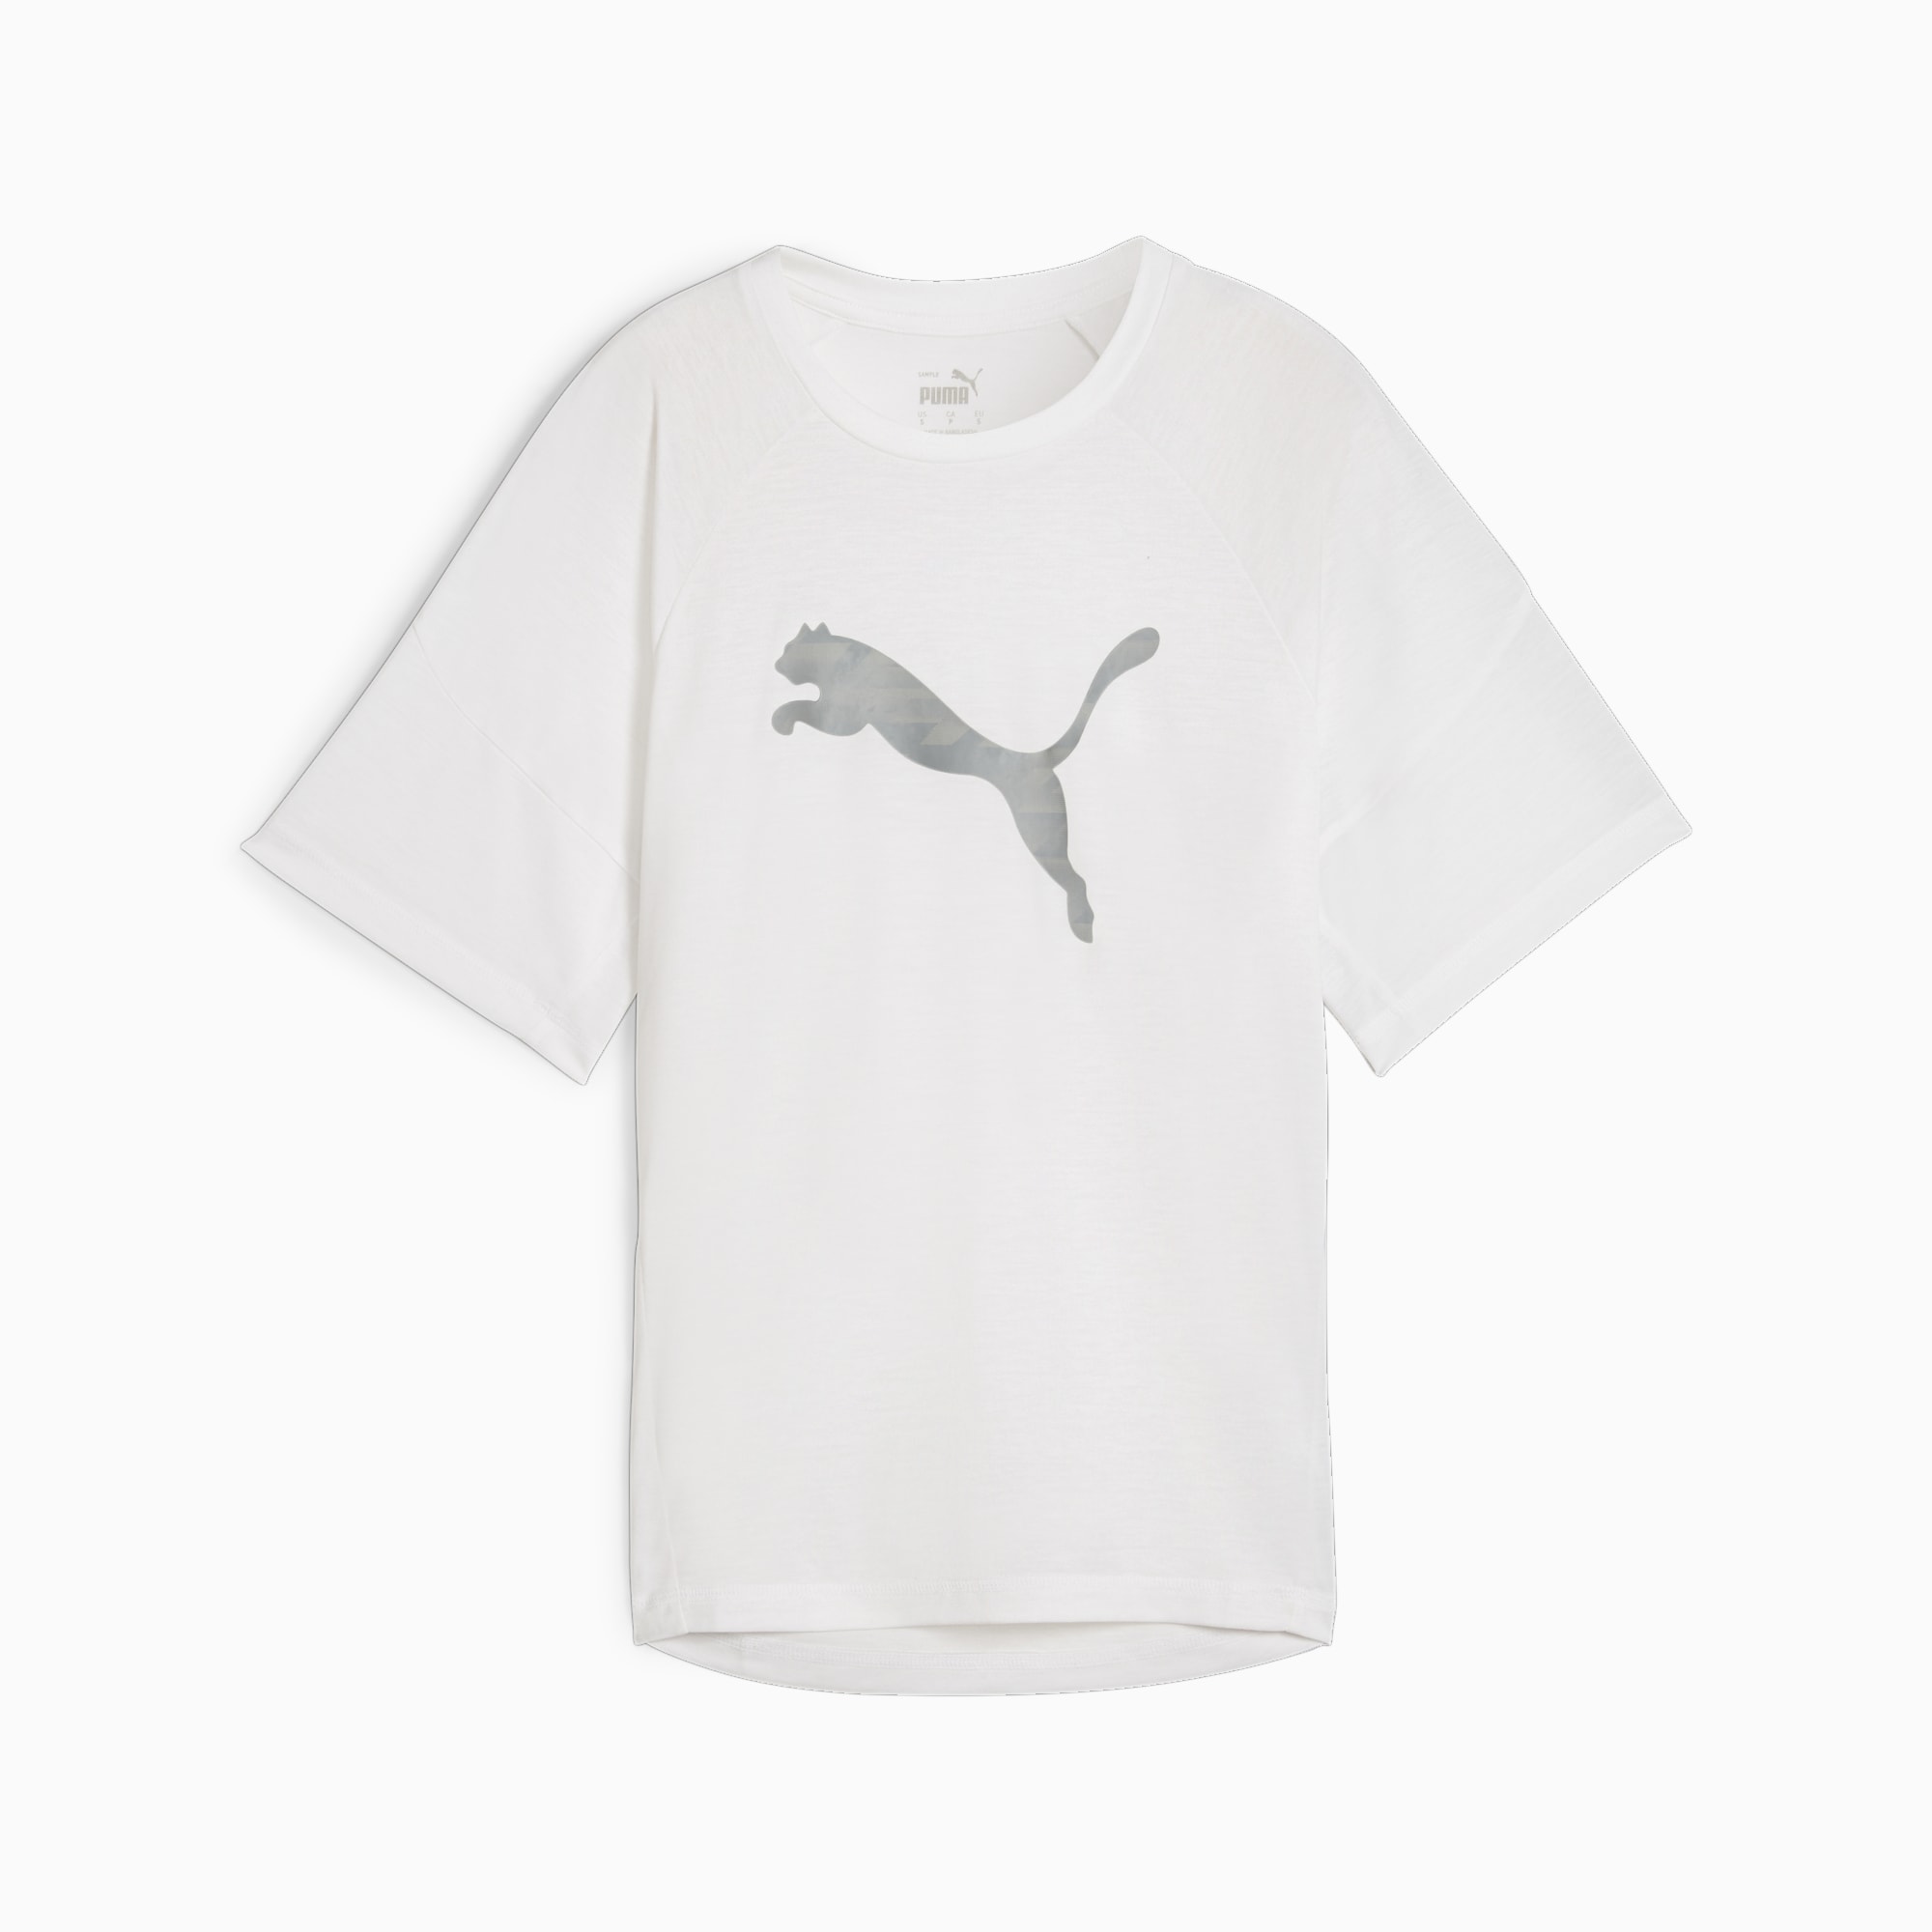 PUMA Evostripe Women's Graphic T-Shirt, White, Size M, Clothing